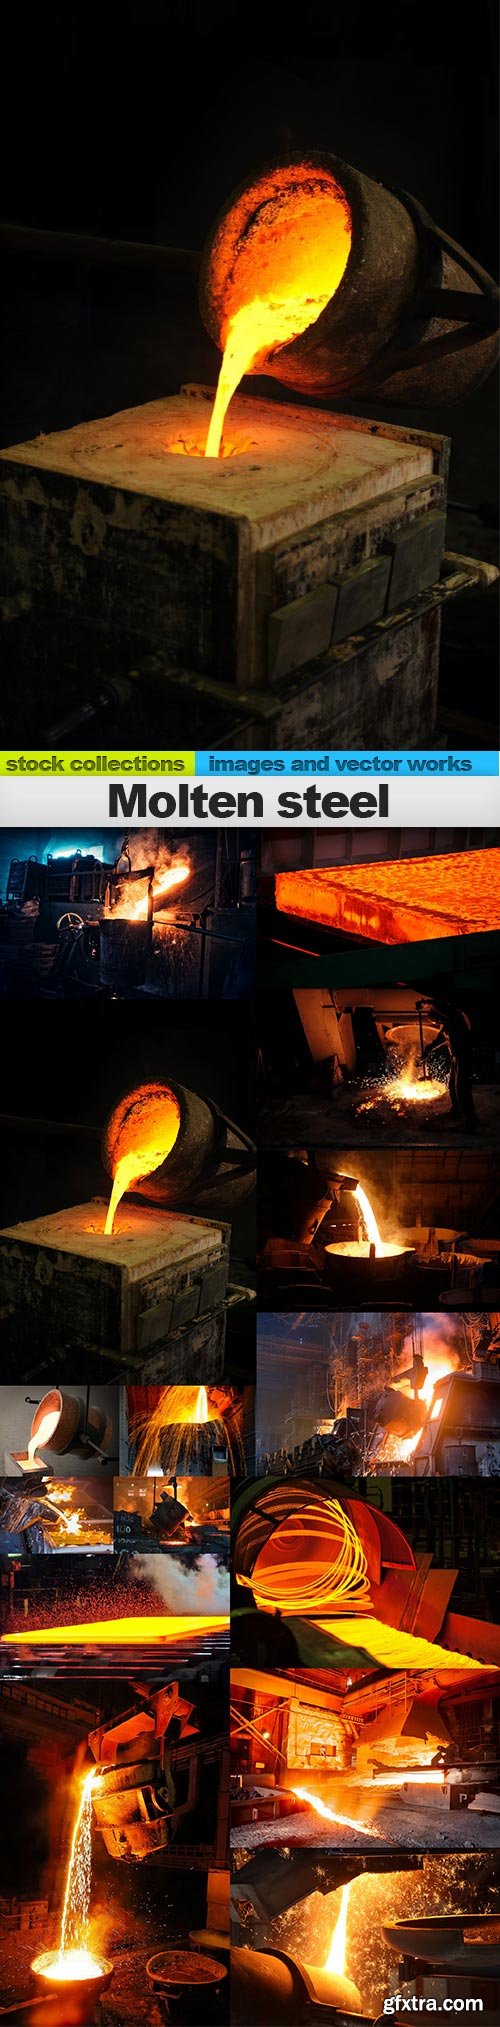 Molten steel, 15 x UHQ JPEG